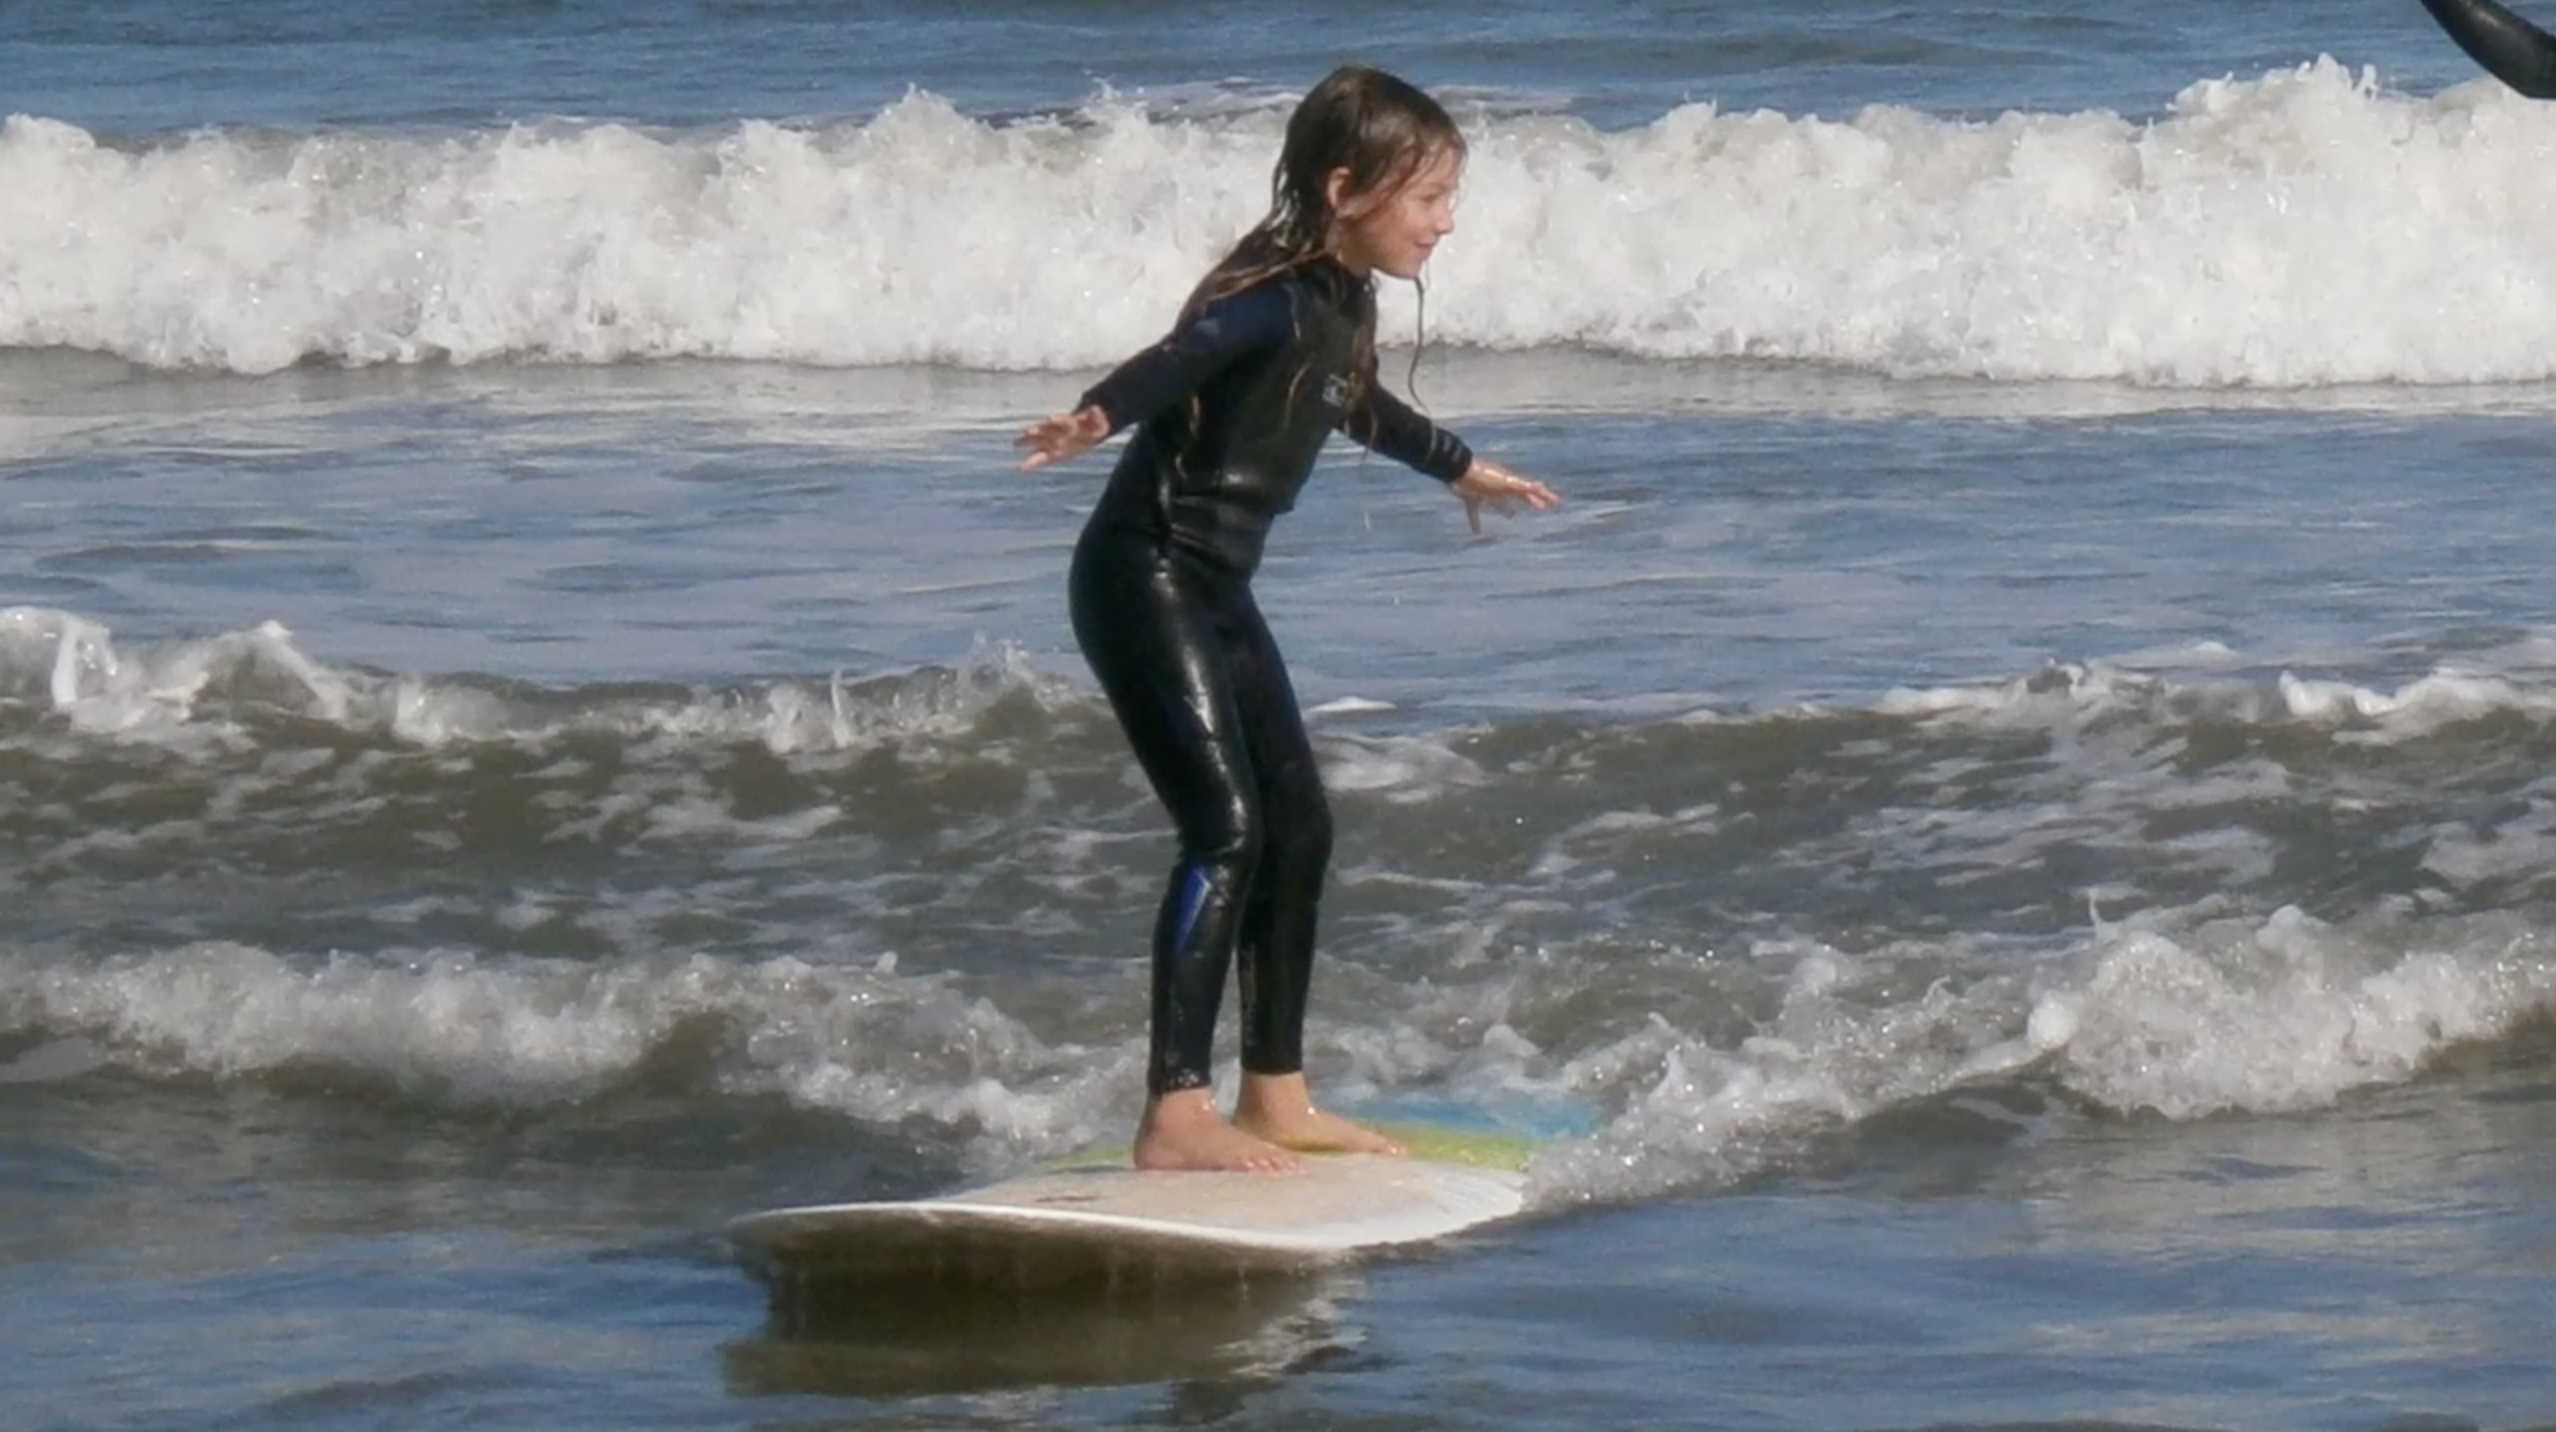 Emilia Winter Surfing: December 7, 2013